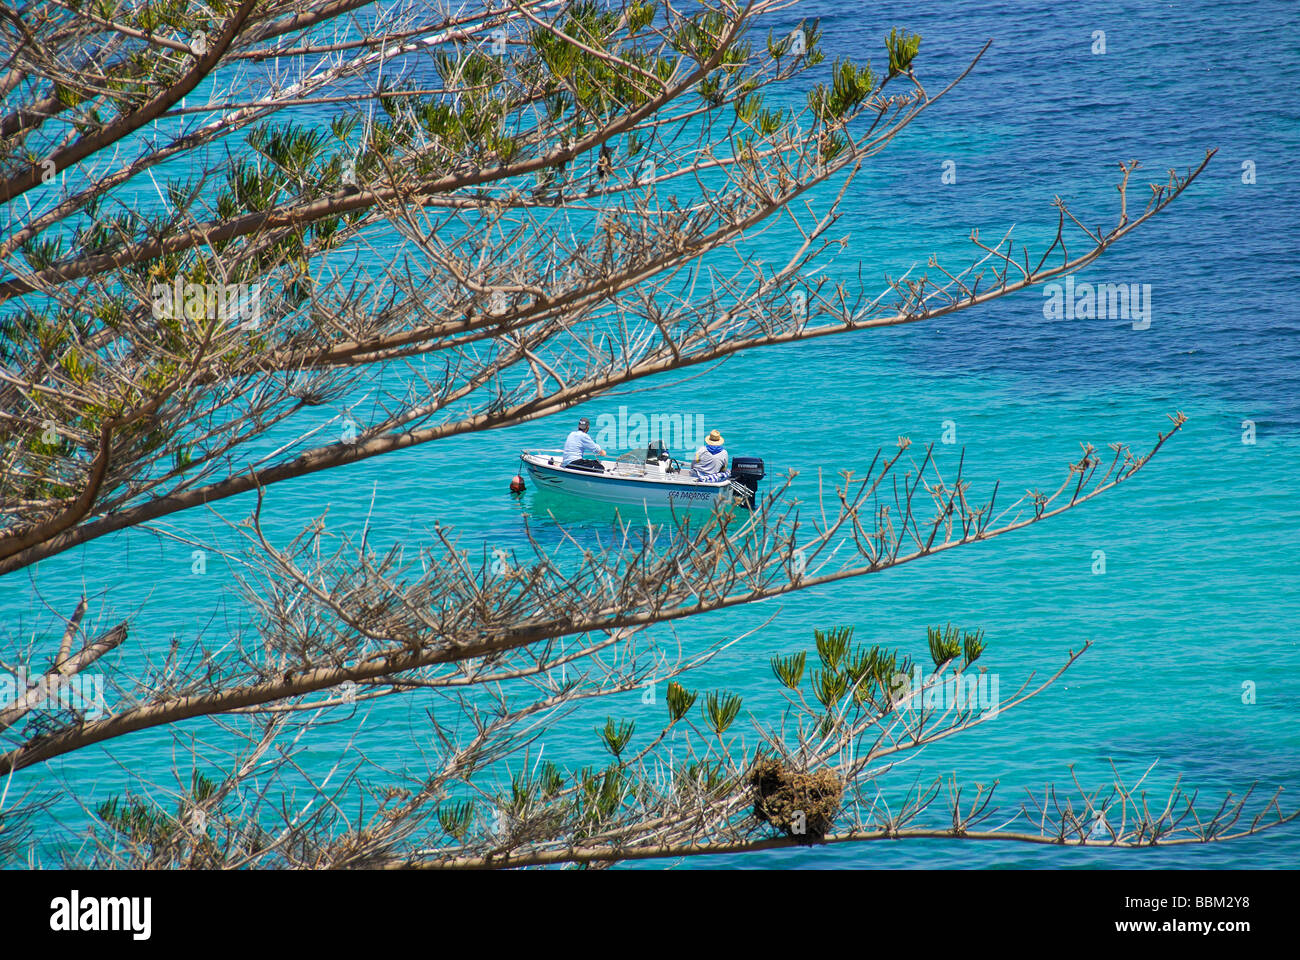 Malte. Deux hommes dans un petit bateau dans les eaux cristallines de la baie de Balluta, St Julian's. L'année 2009. Banque D'Images